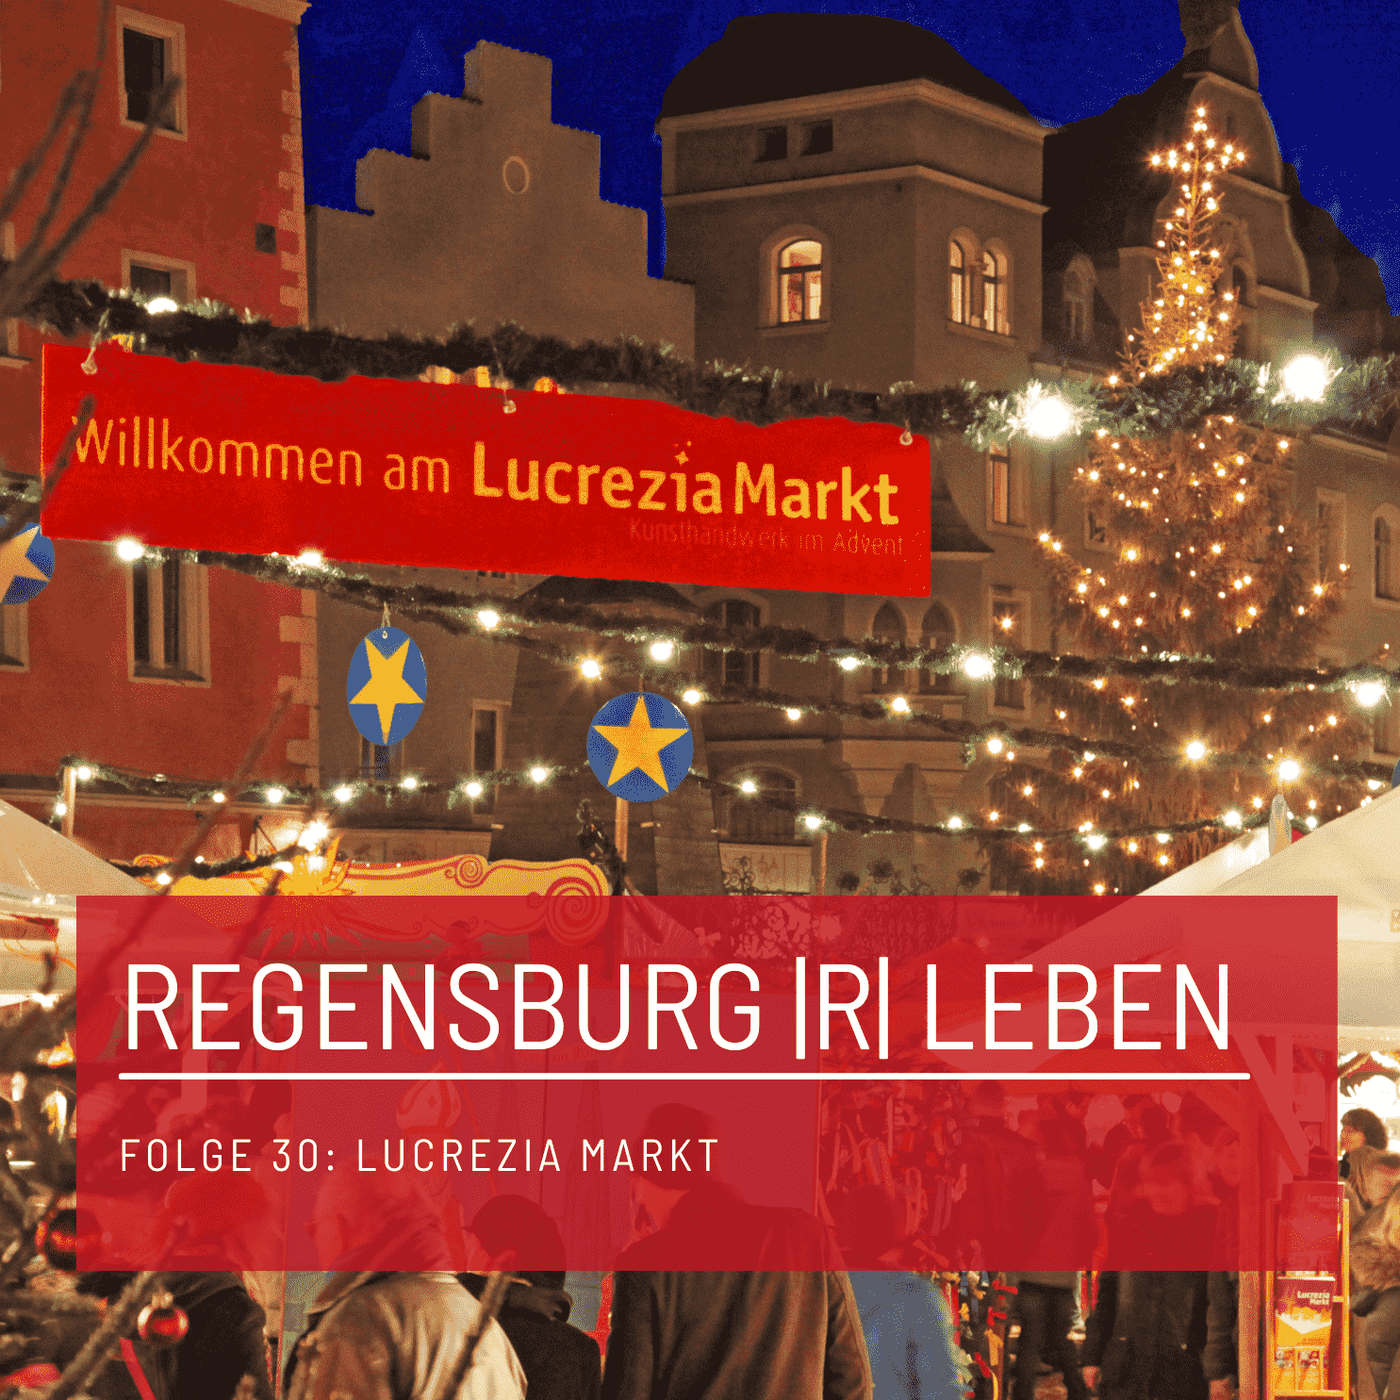 REGENSBURG |R| LEBEN - Folge 30 - Lucrezia Markt